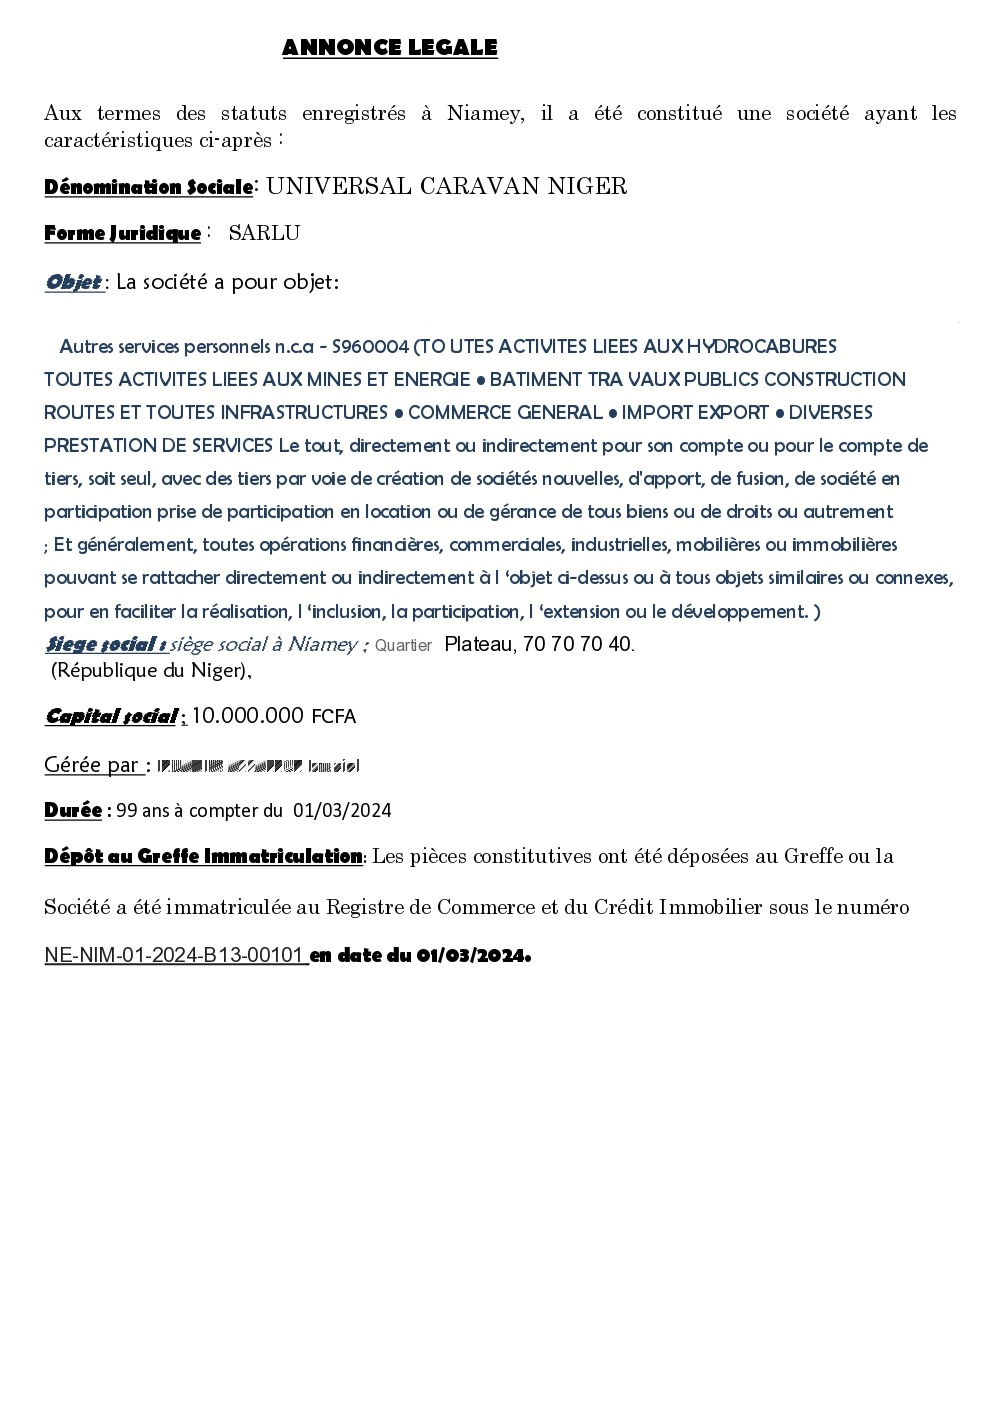 You are currently viewing ANNONCE LEGALE : AVIS DE CONSTITUTION DE SOCIETE